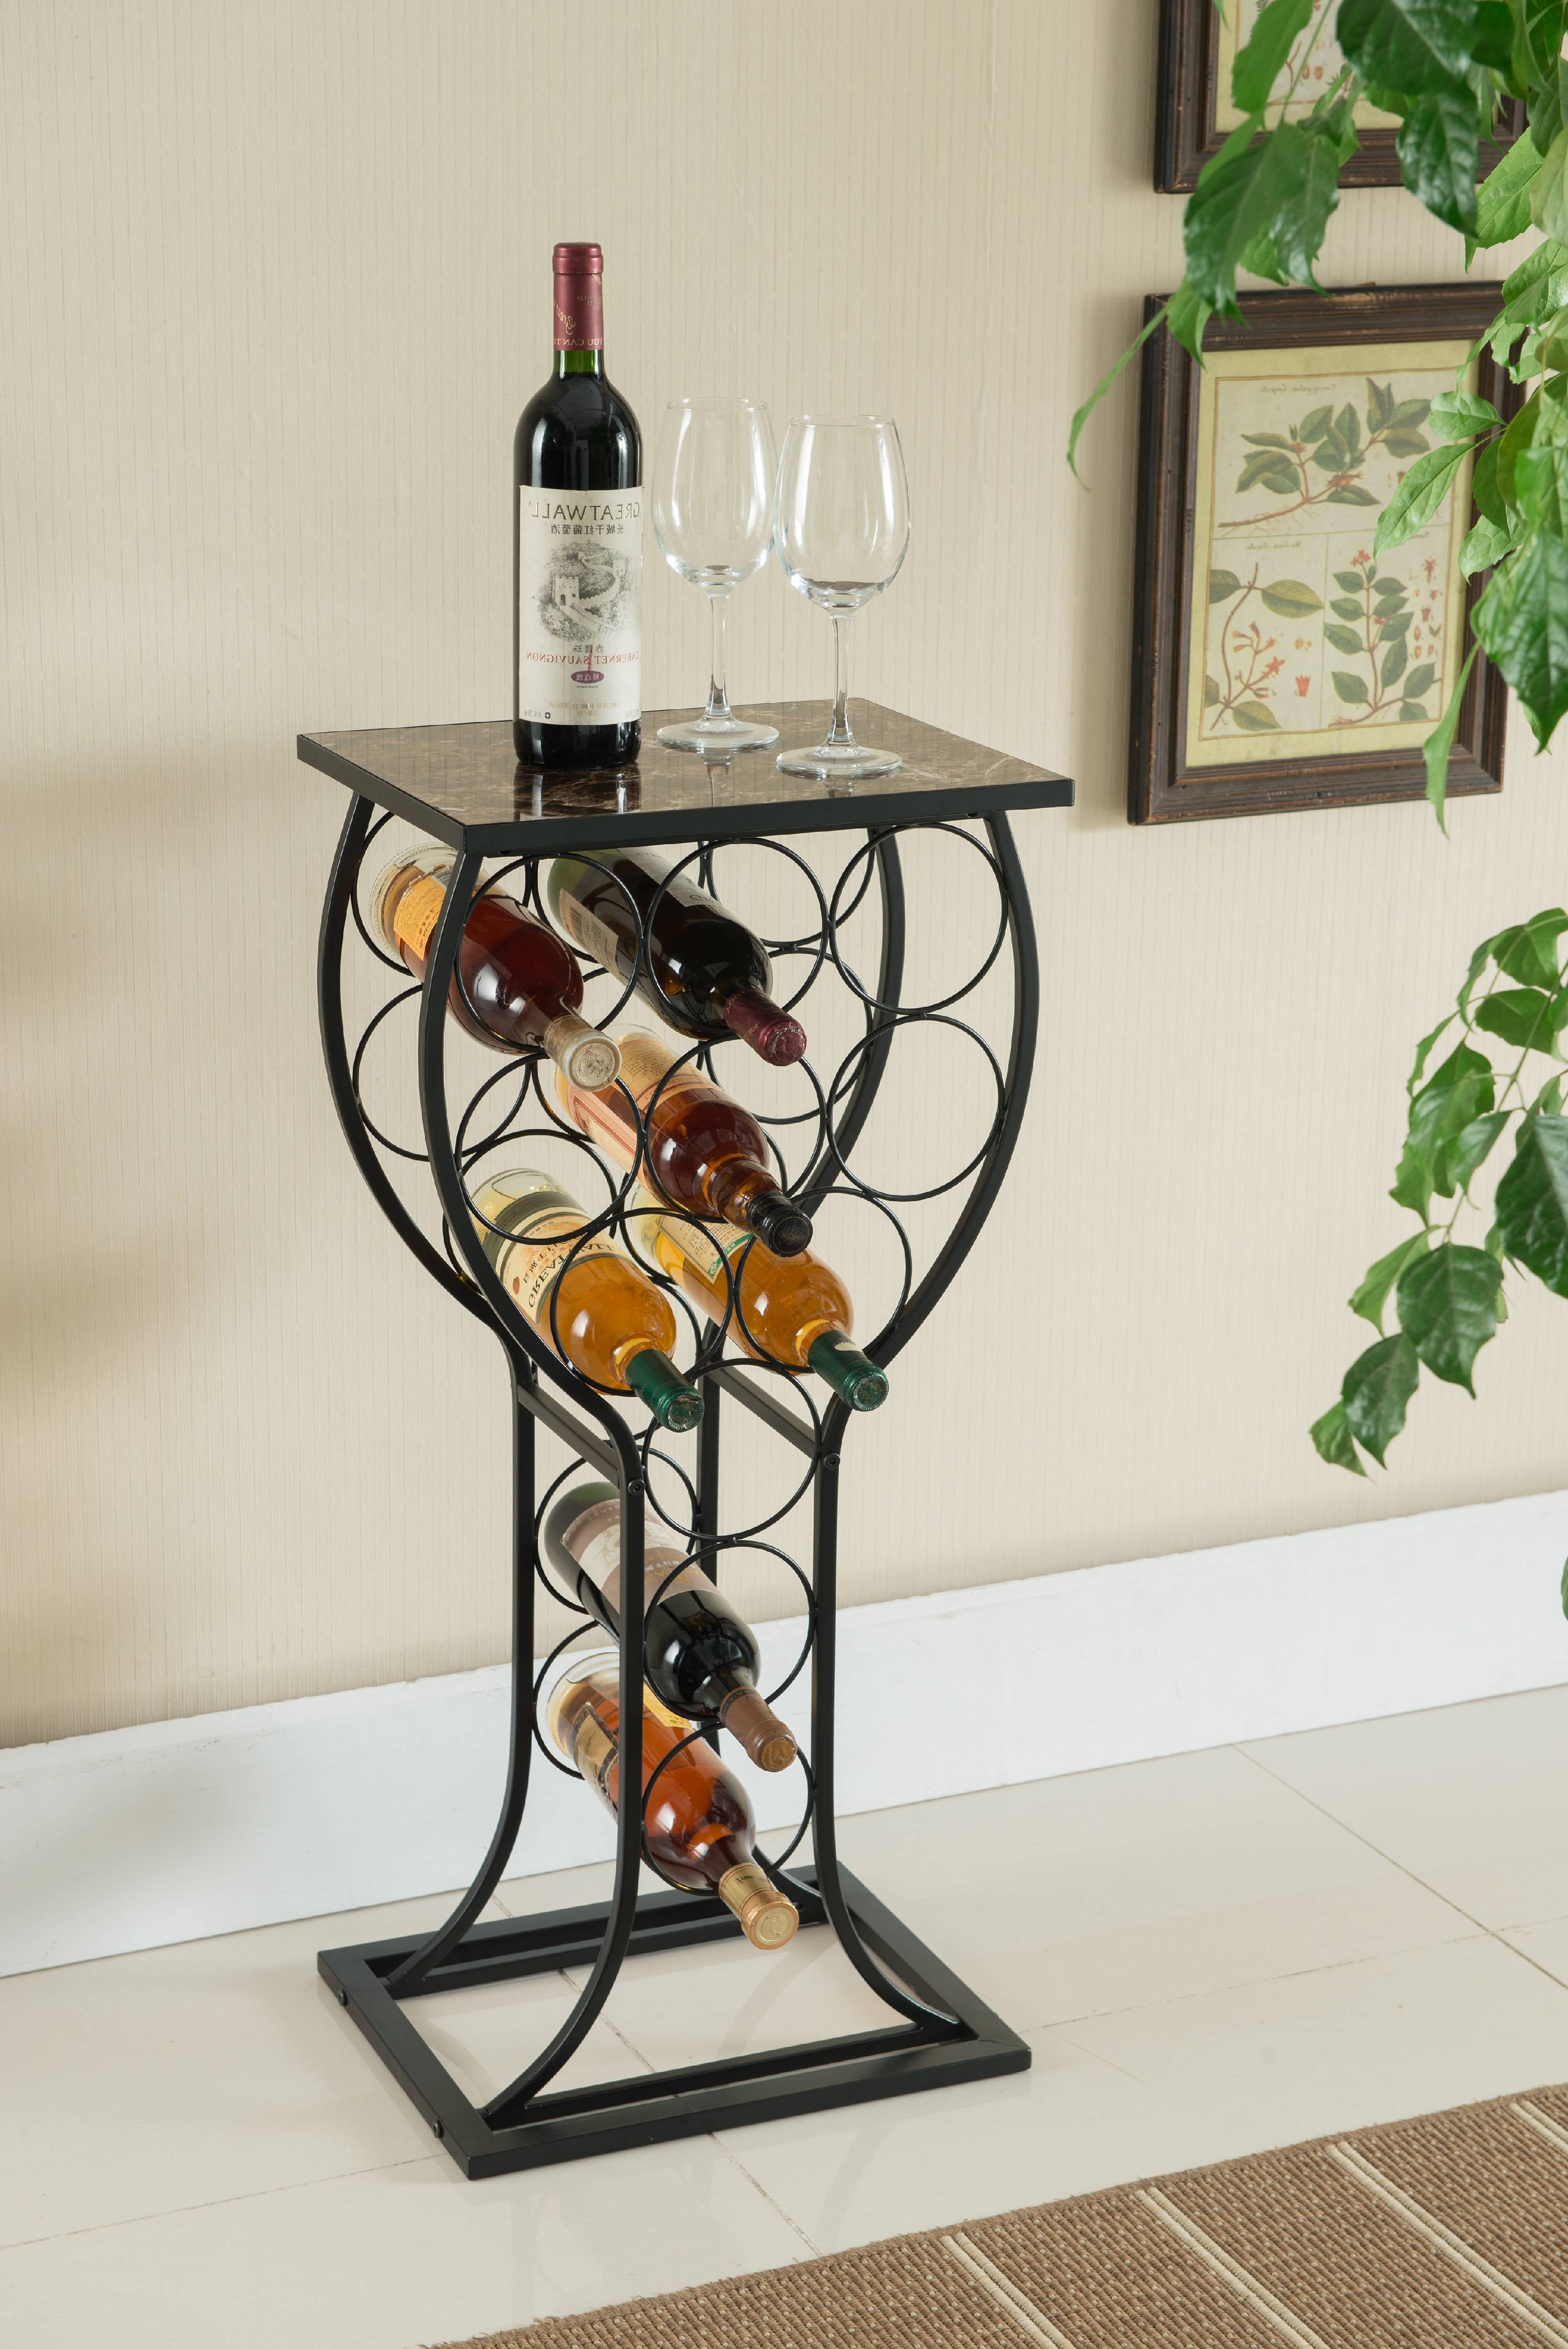 21 Wine Bottles Stainless Steel Finish Rack Holder Free Standing Floor Shelf 